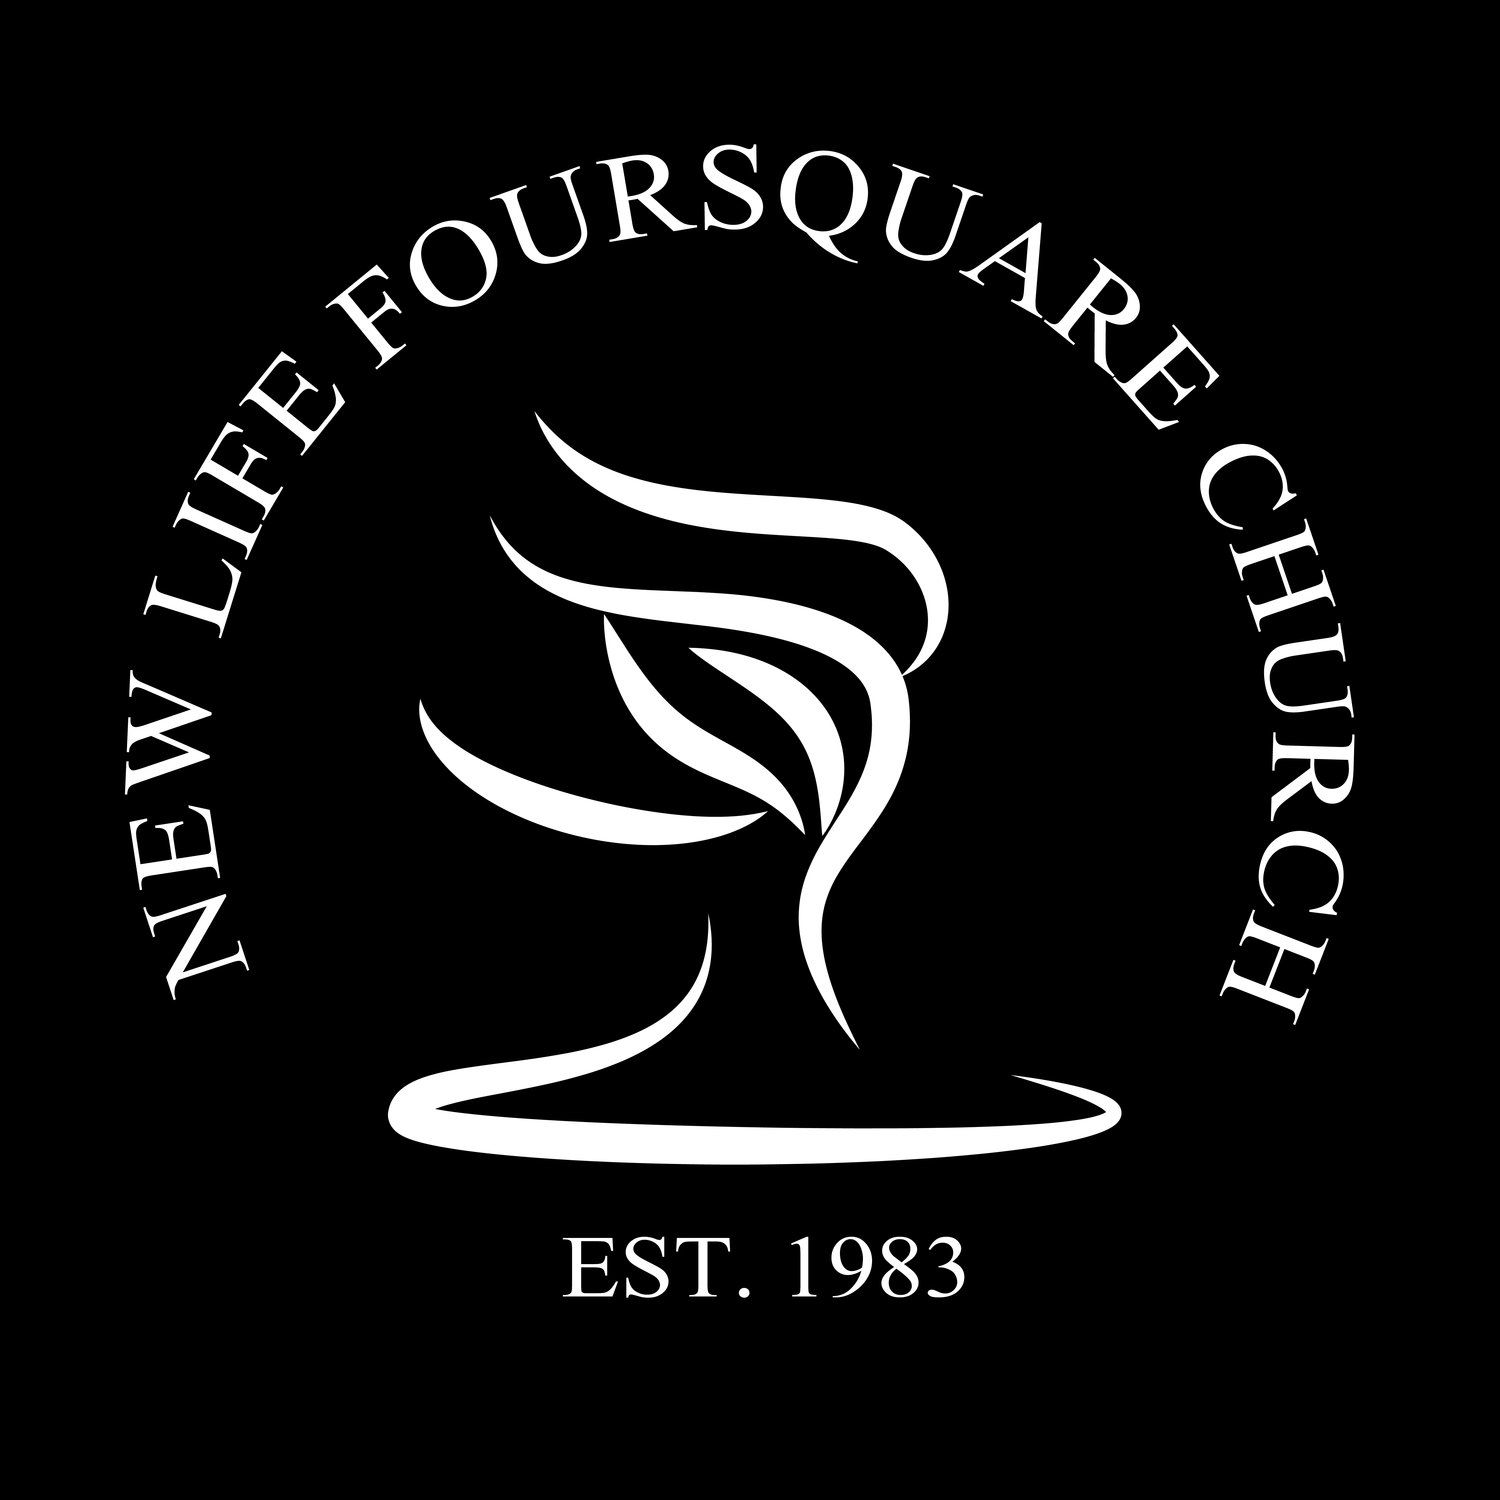 New Life Foursquare Church